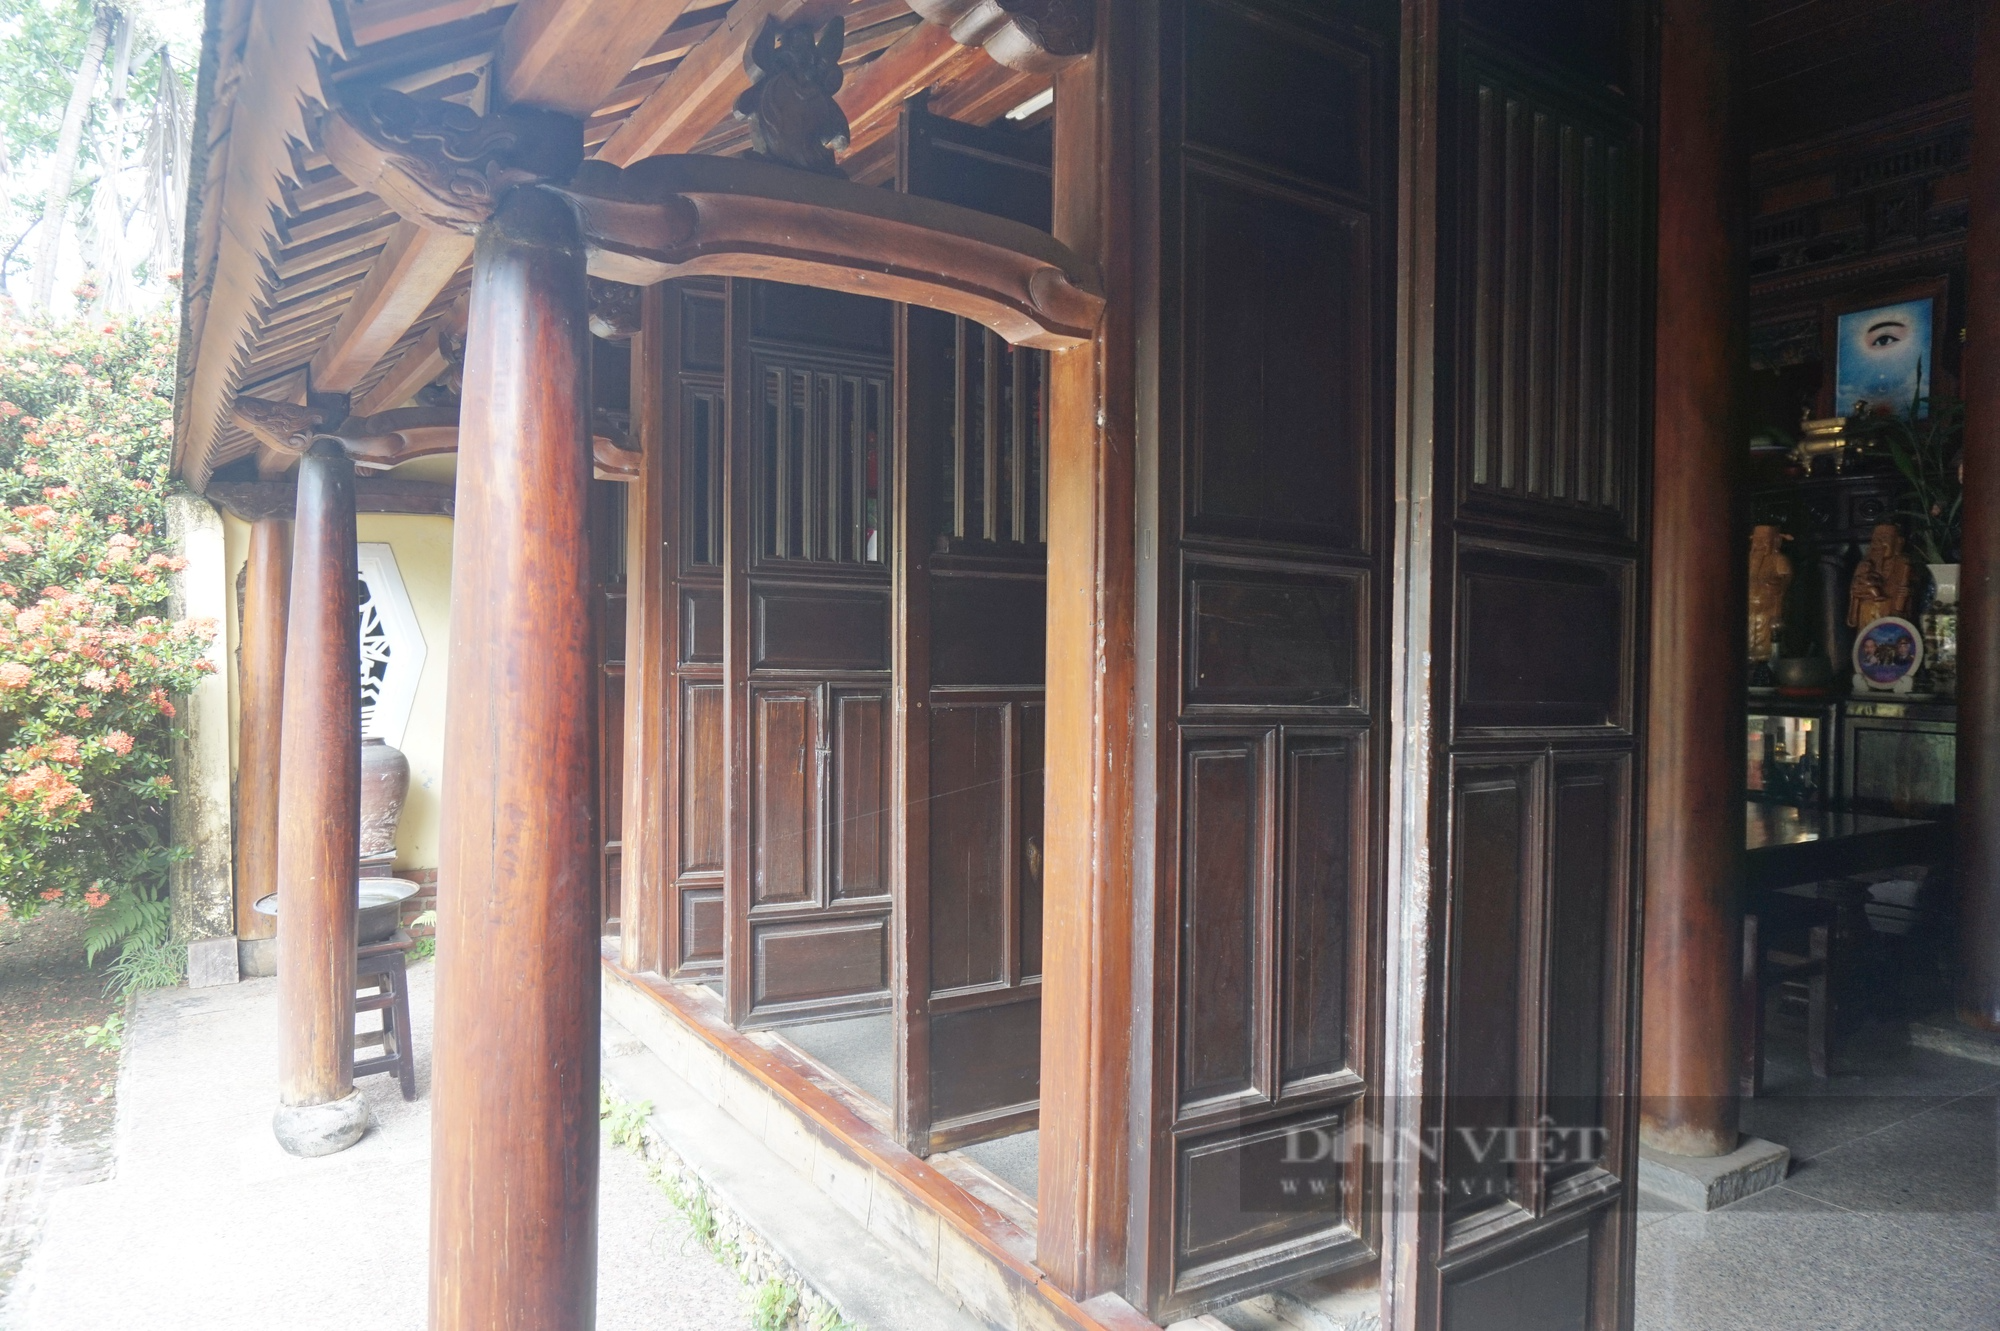 Ngôi nhà cổ hơn 200 tuổi còn nguyên vẹn độc nhất ở Đà Nẵng có gì đặc biệt? - Ảnh 9.